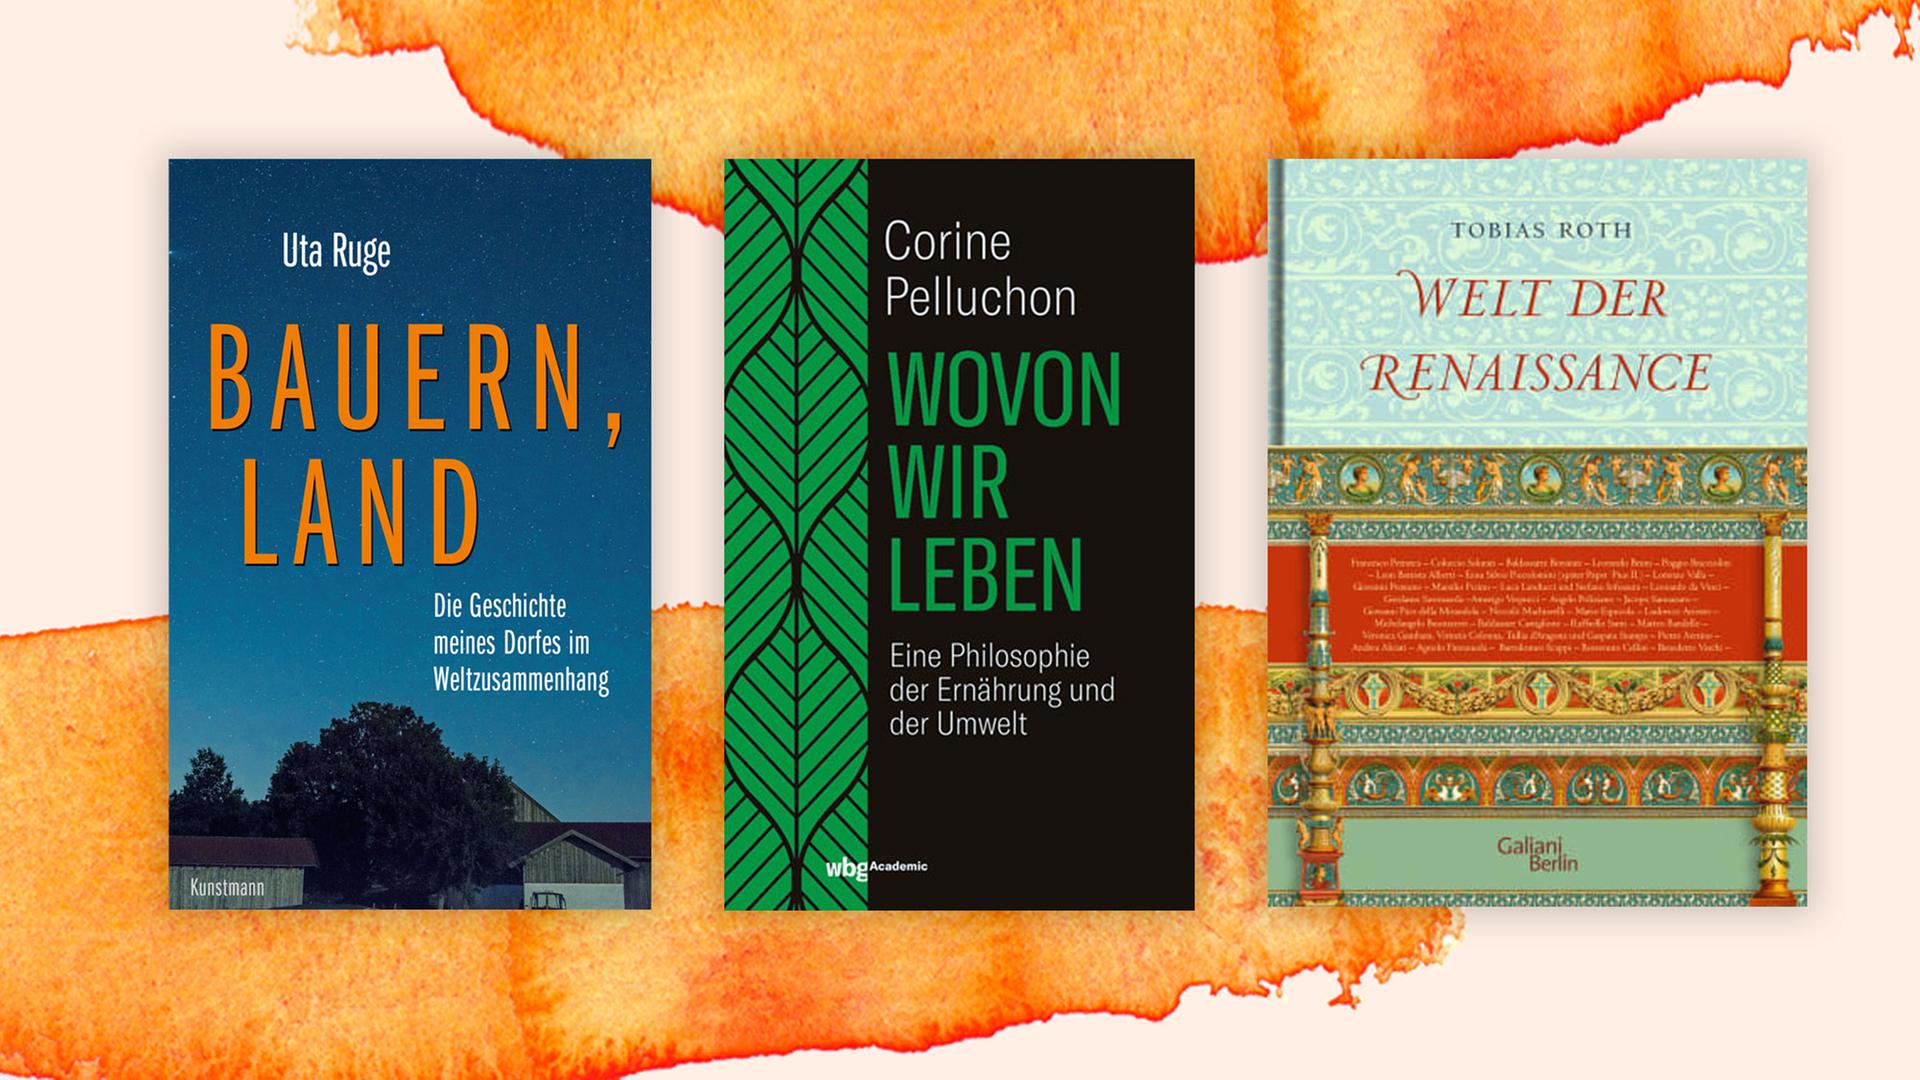 Coverabbildung der Bücher Uta Ruge "Bauern, Land", Corine Pelluchon: "Wovon wir leben" und Tobias Roth: "Welt der Renaissance".